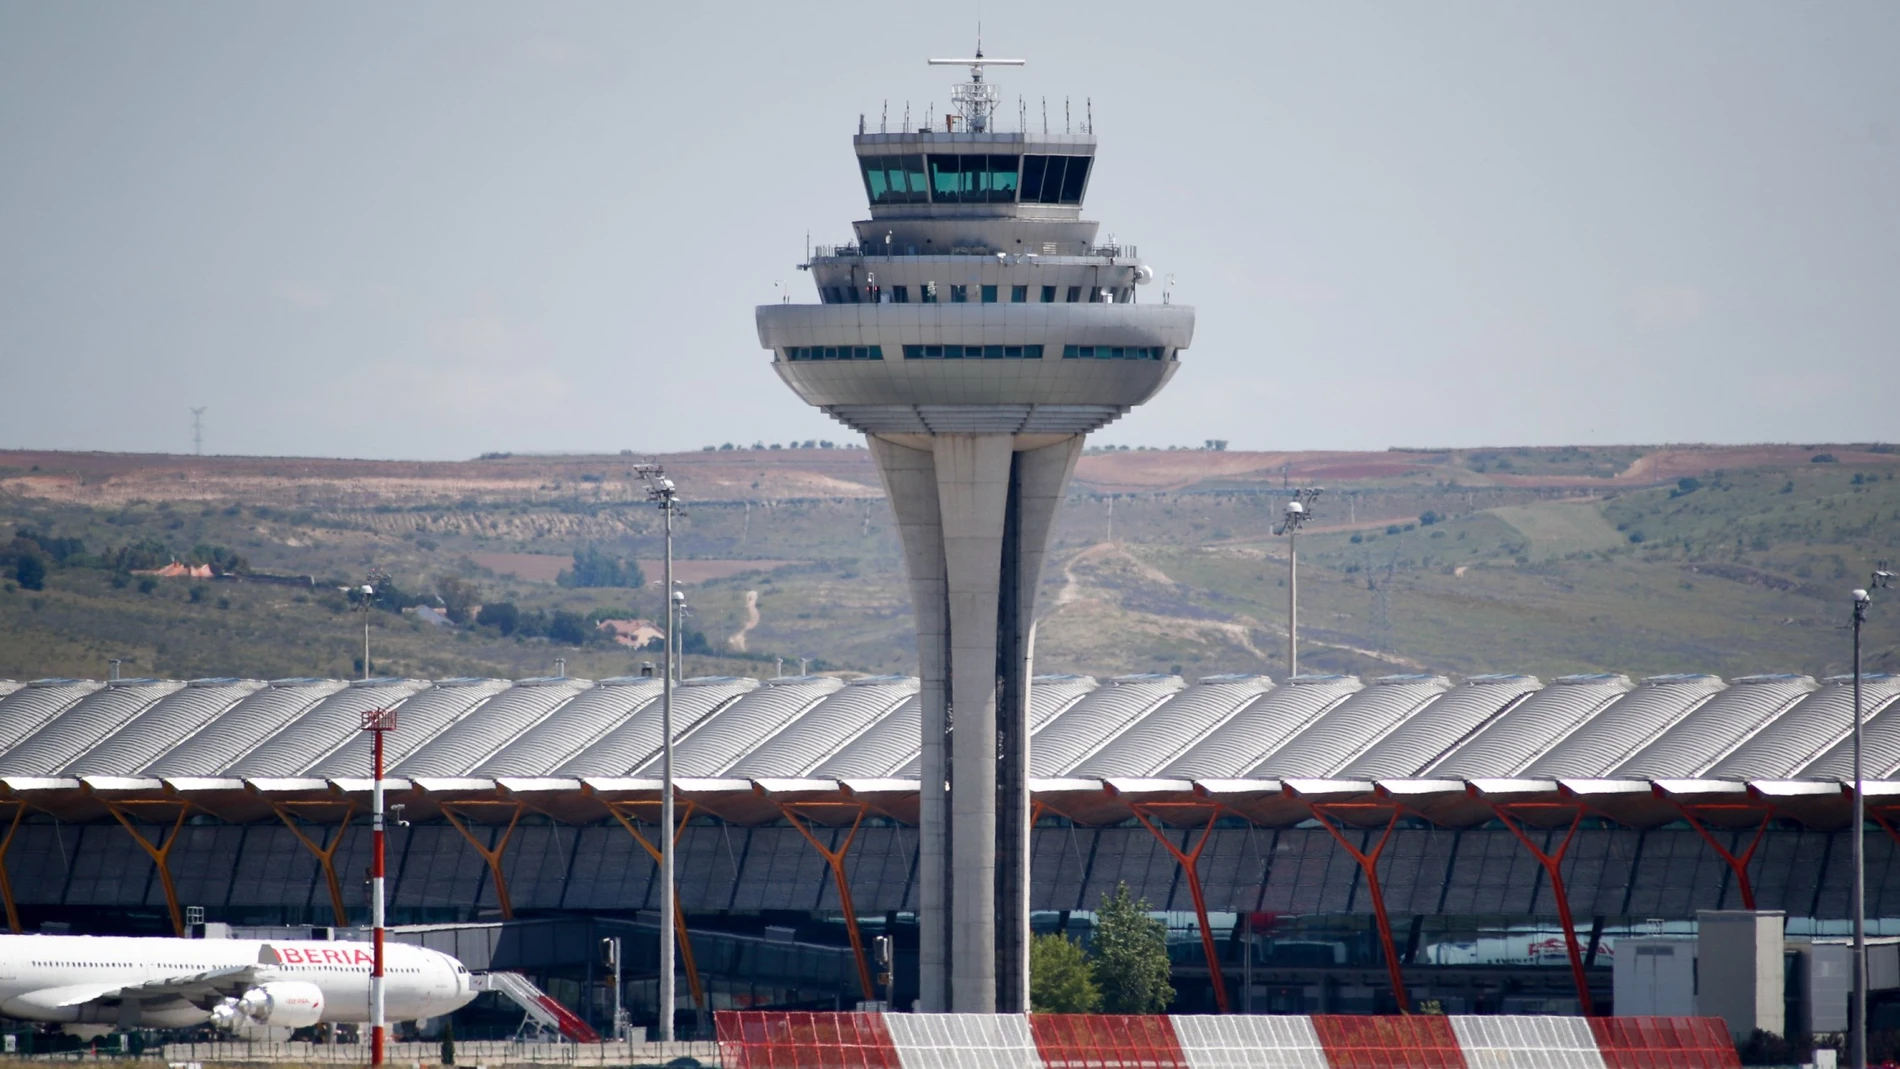 Torre de control del Aeropuerto de Madrid-Barajas Adolfo Suárez